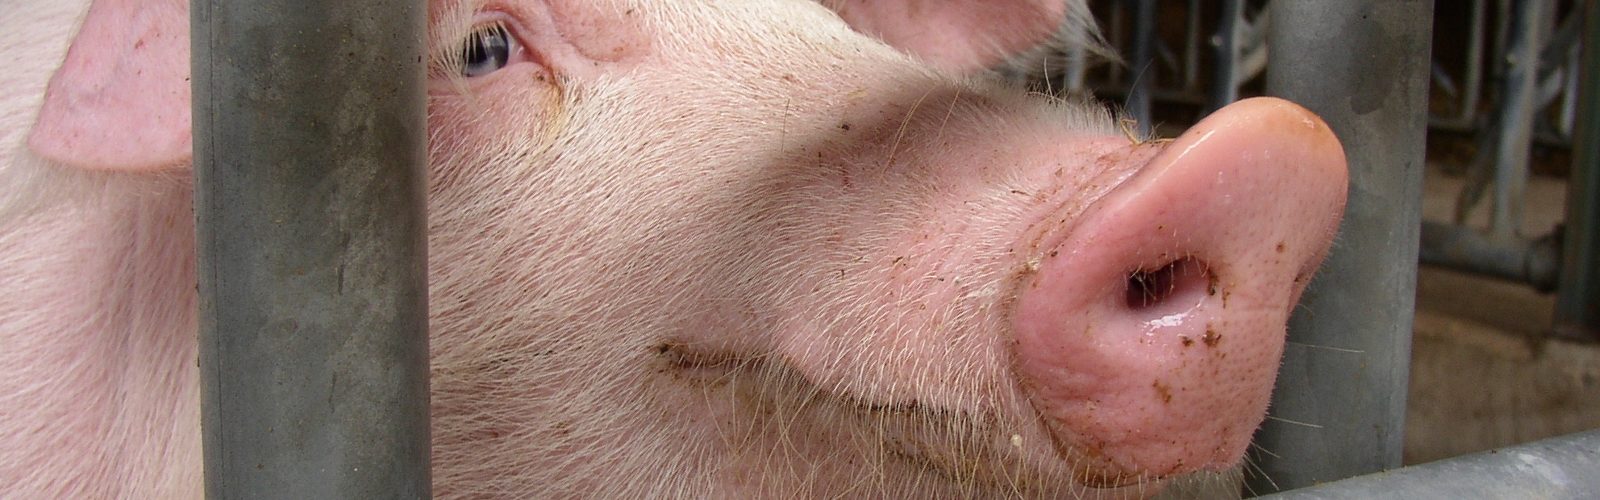 beeld varken in de vee-industrie